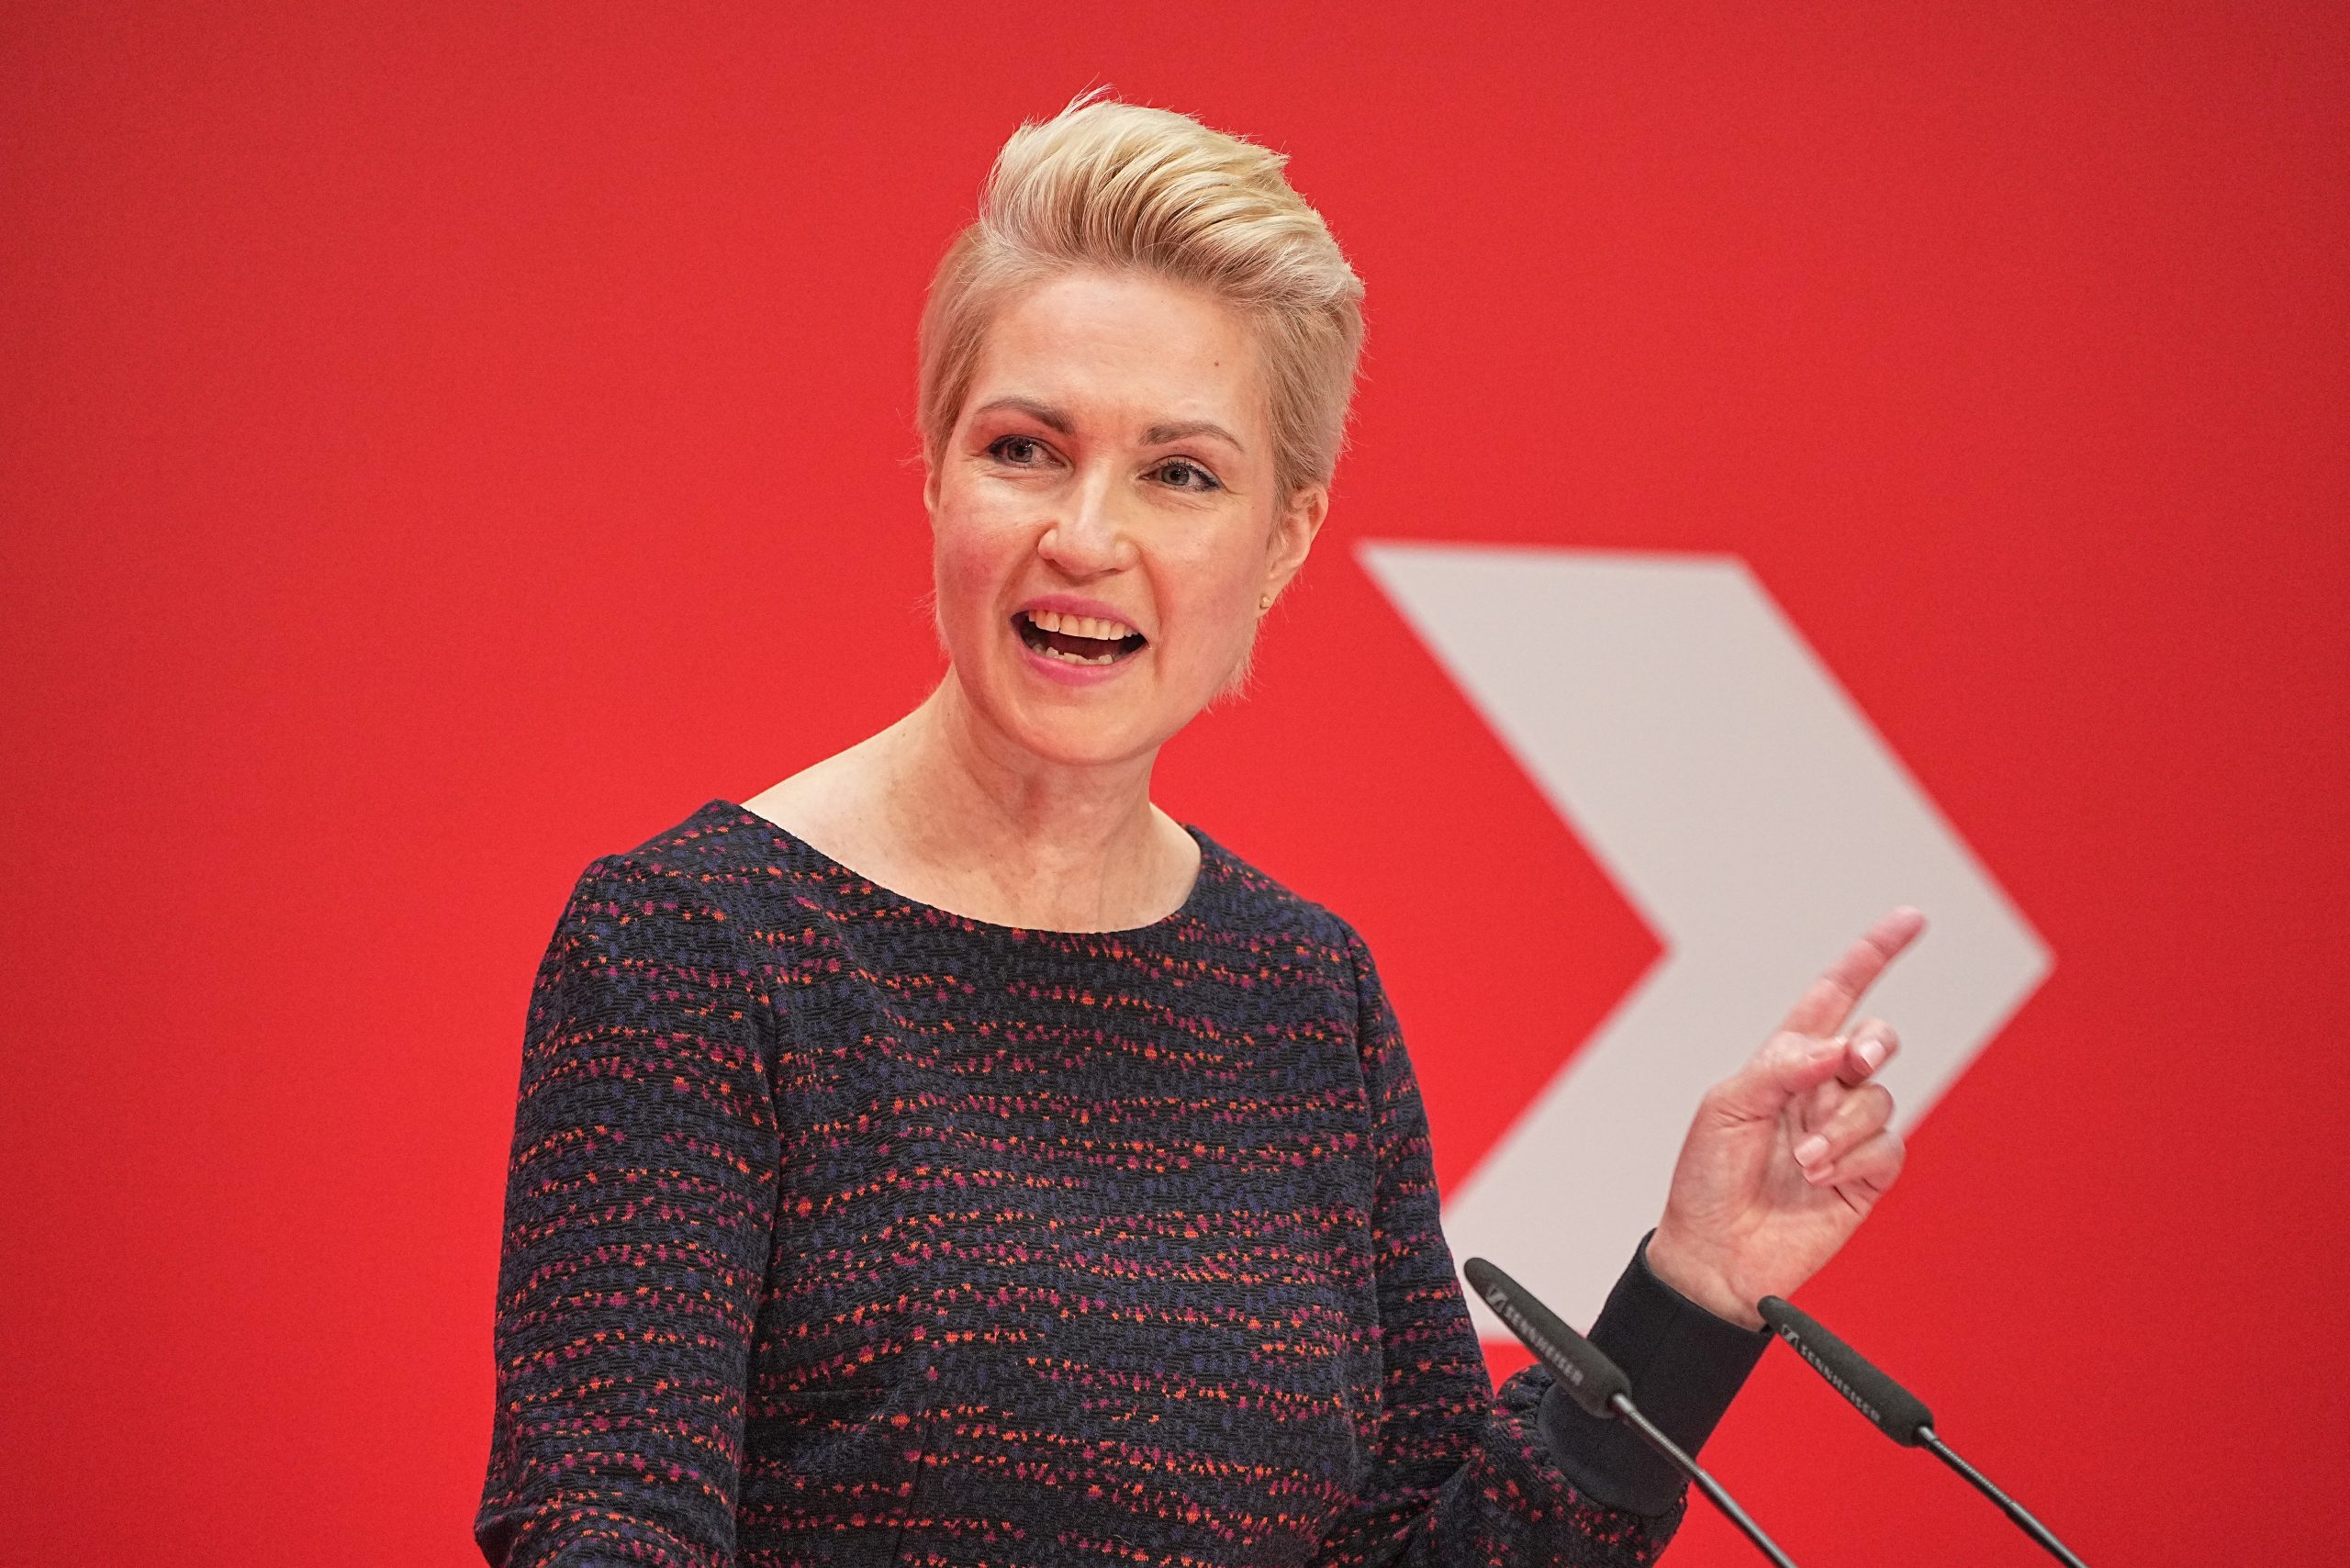 Kürzlich als Diktatorin bezeichnet: Manuela Schwesig (SPD), Ministerpräsidentin von Mecklenburg-Vorpommern.